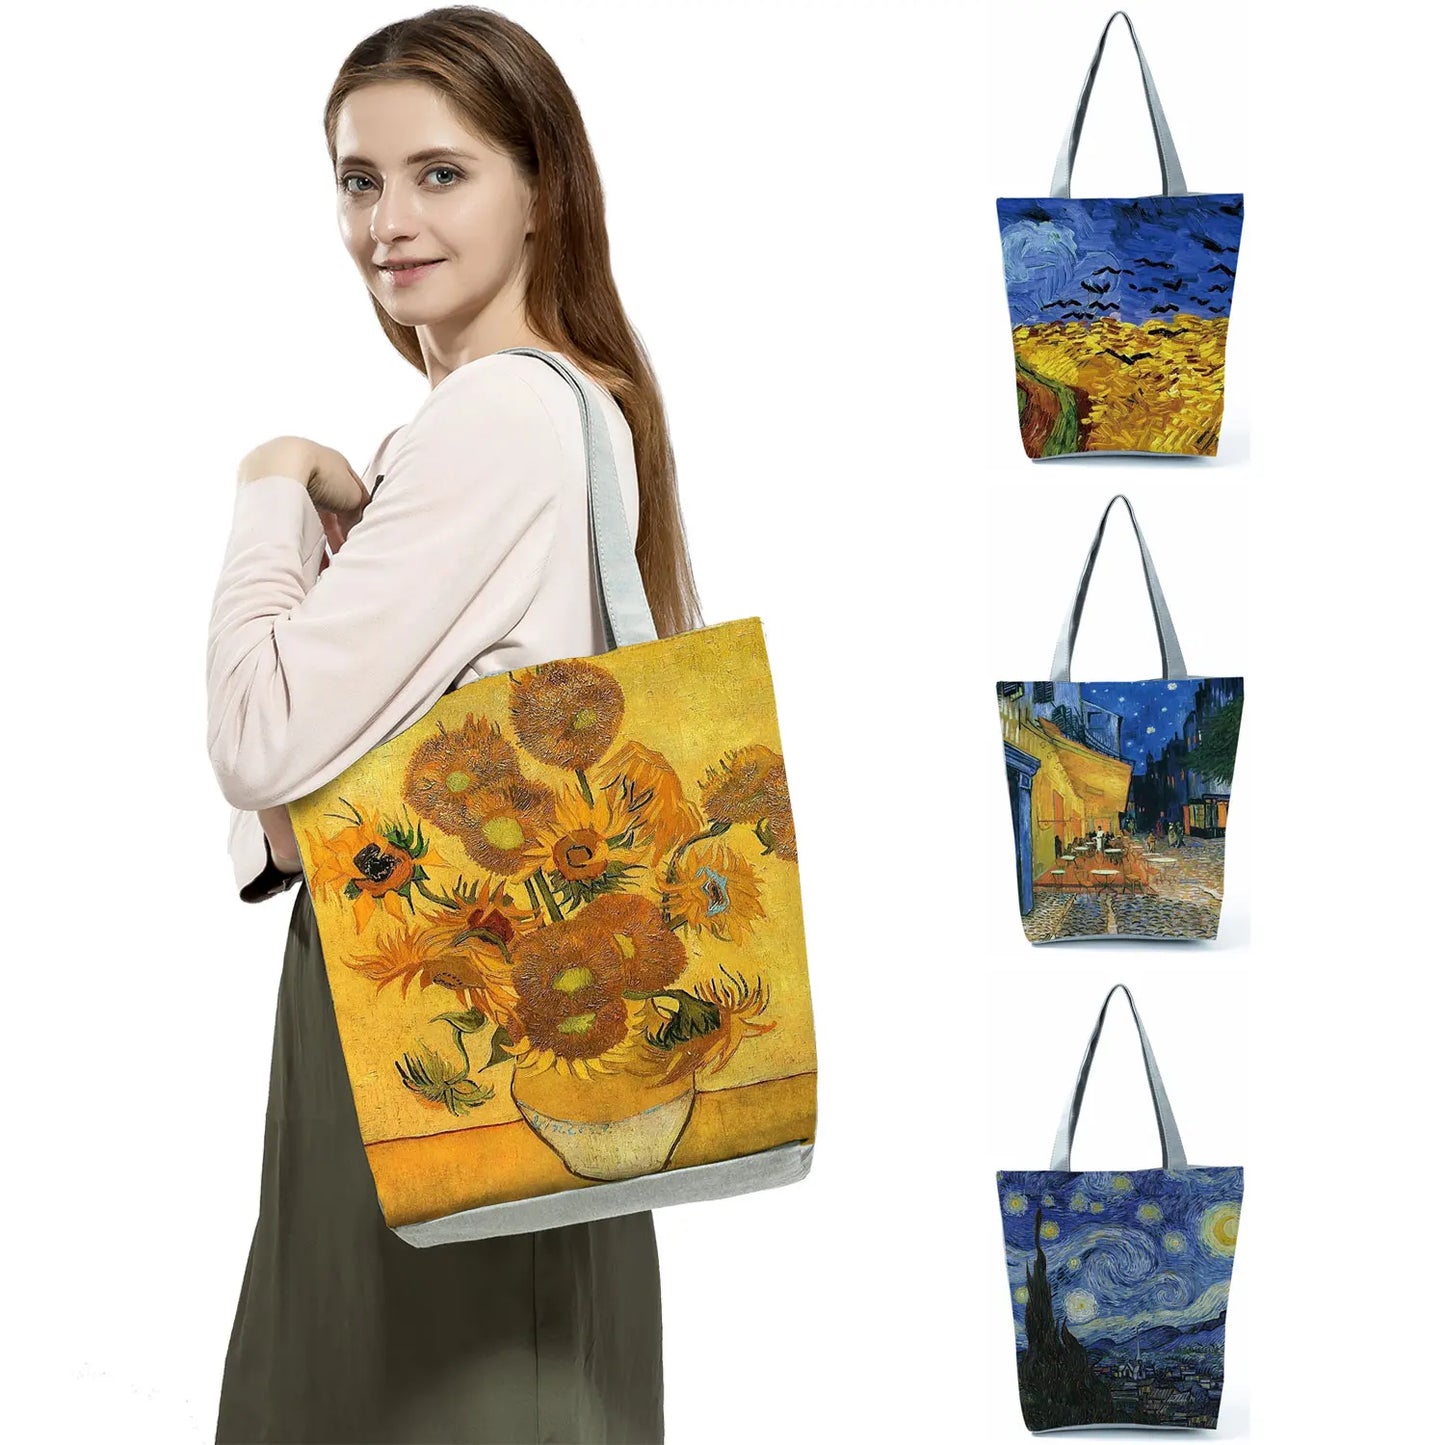 वान गॉग ऑयल पेंटिंग टोट बैग: कला और फैशन का मिश्रण!